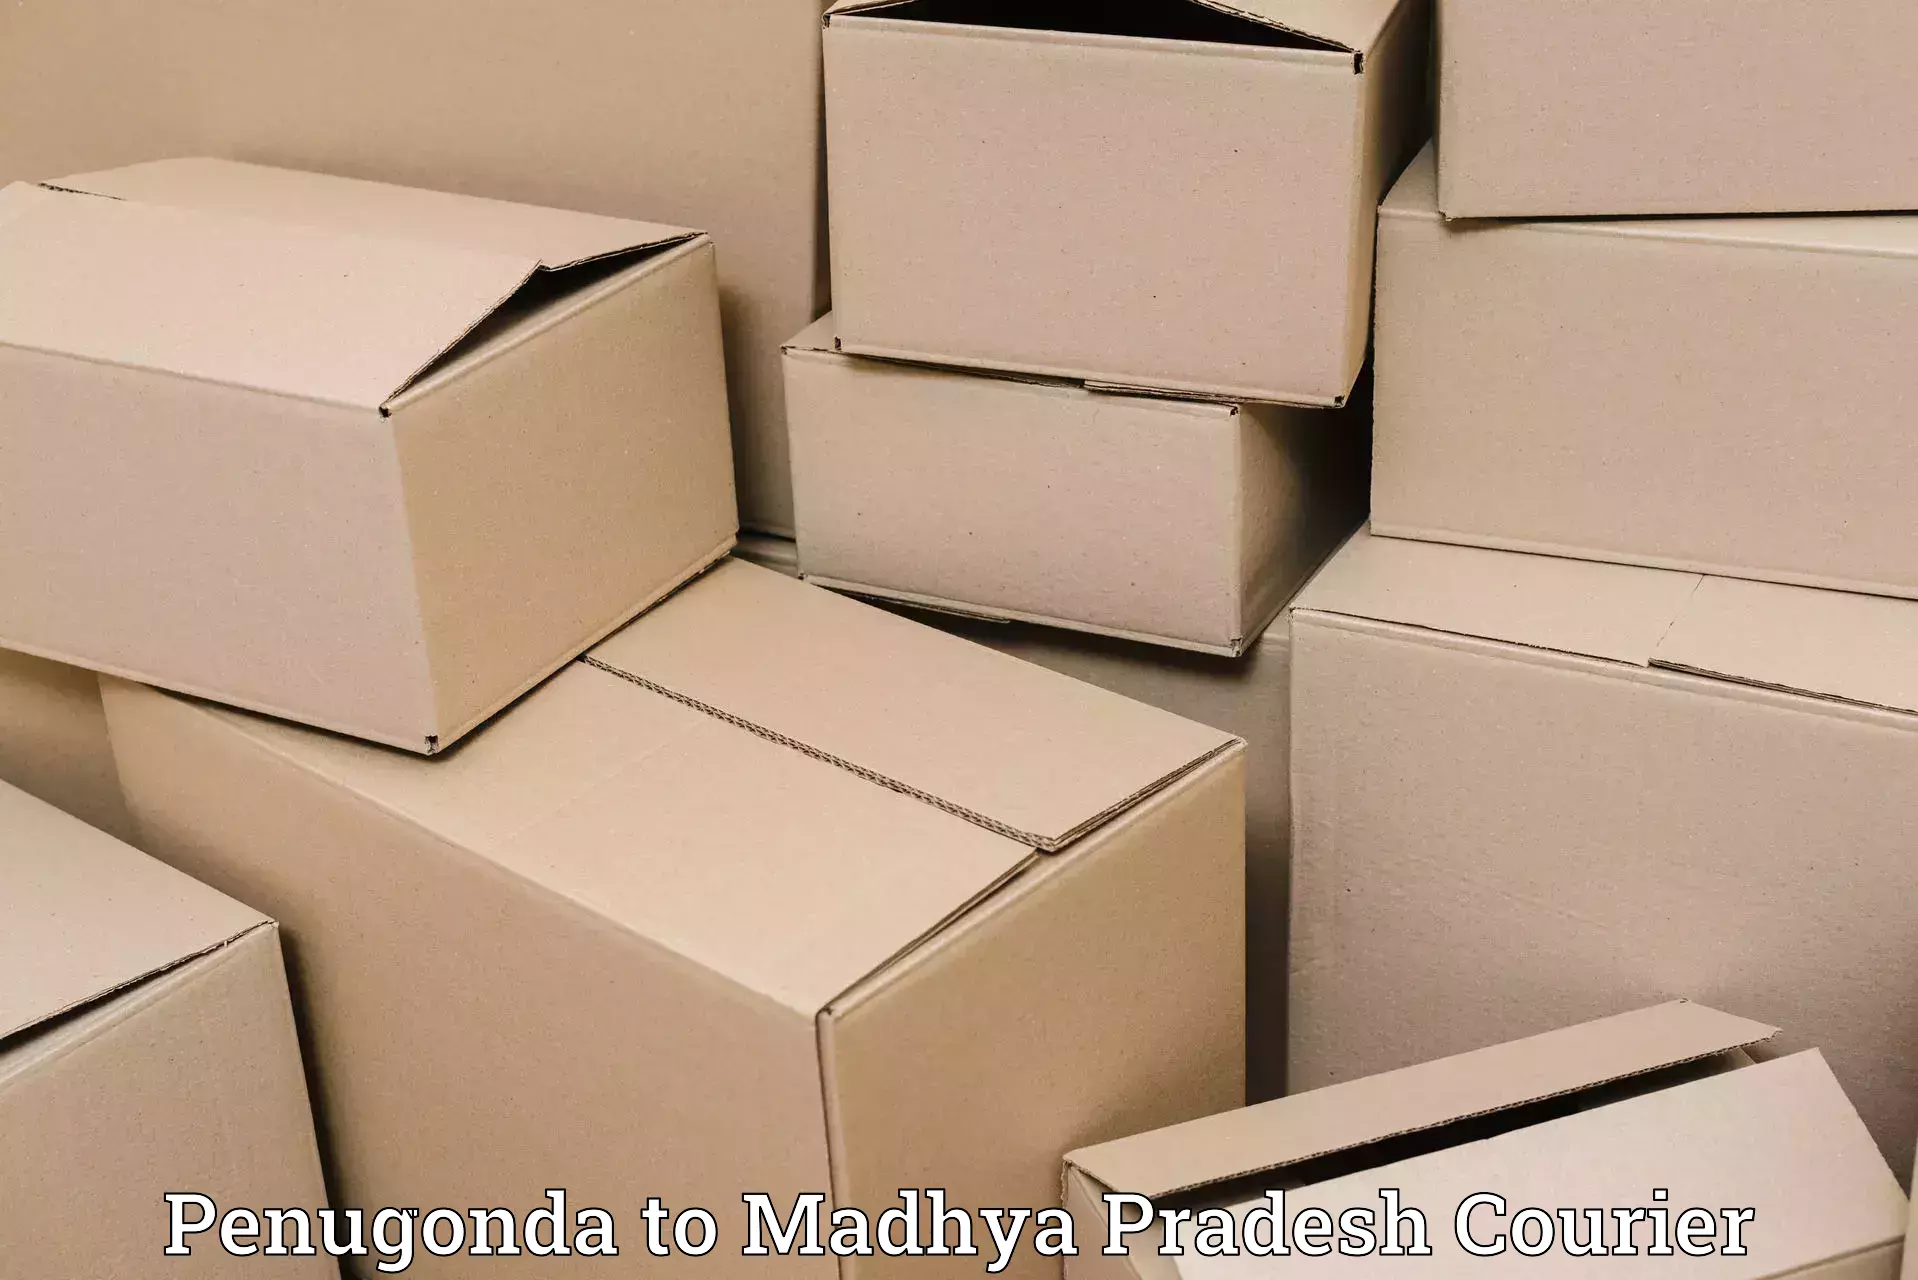 Local delivery service Penugonda to Begumganj